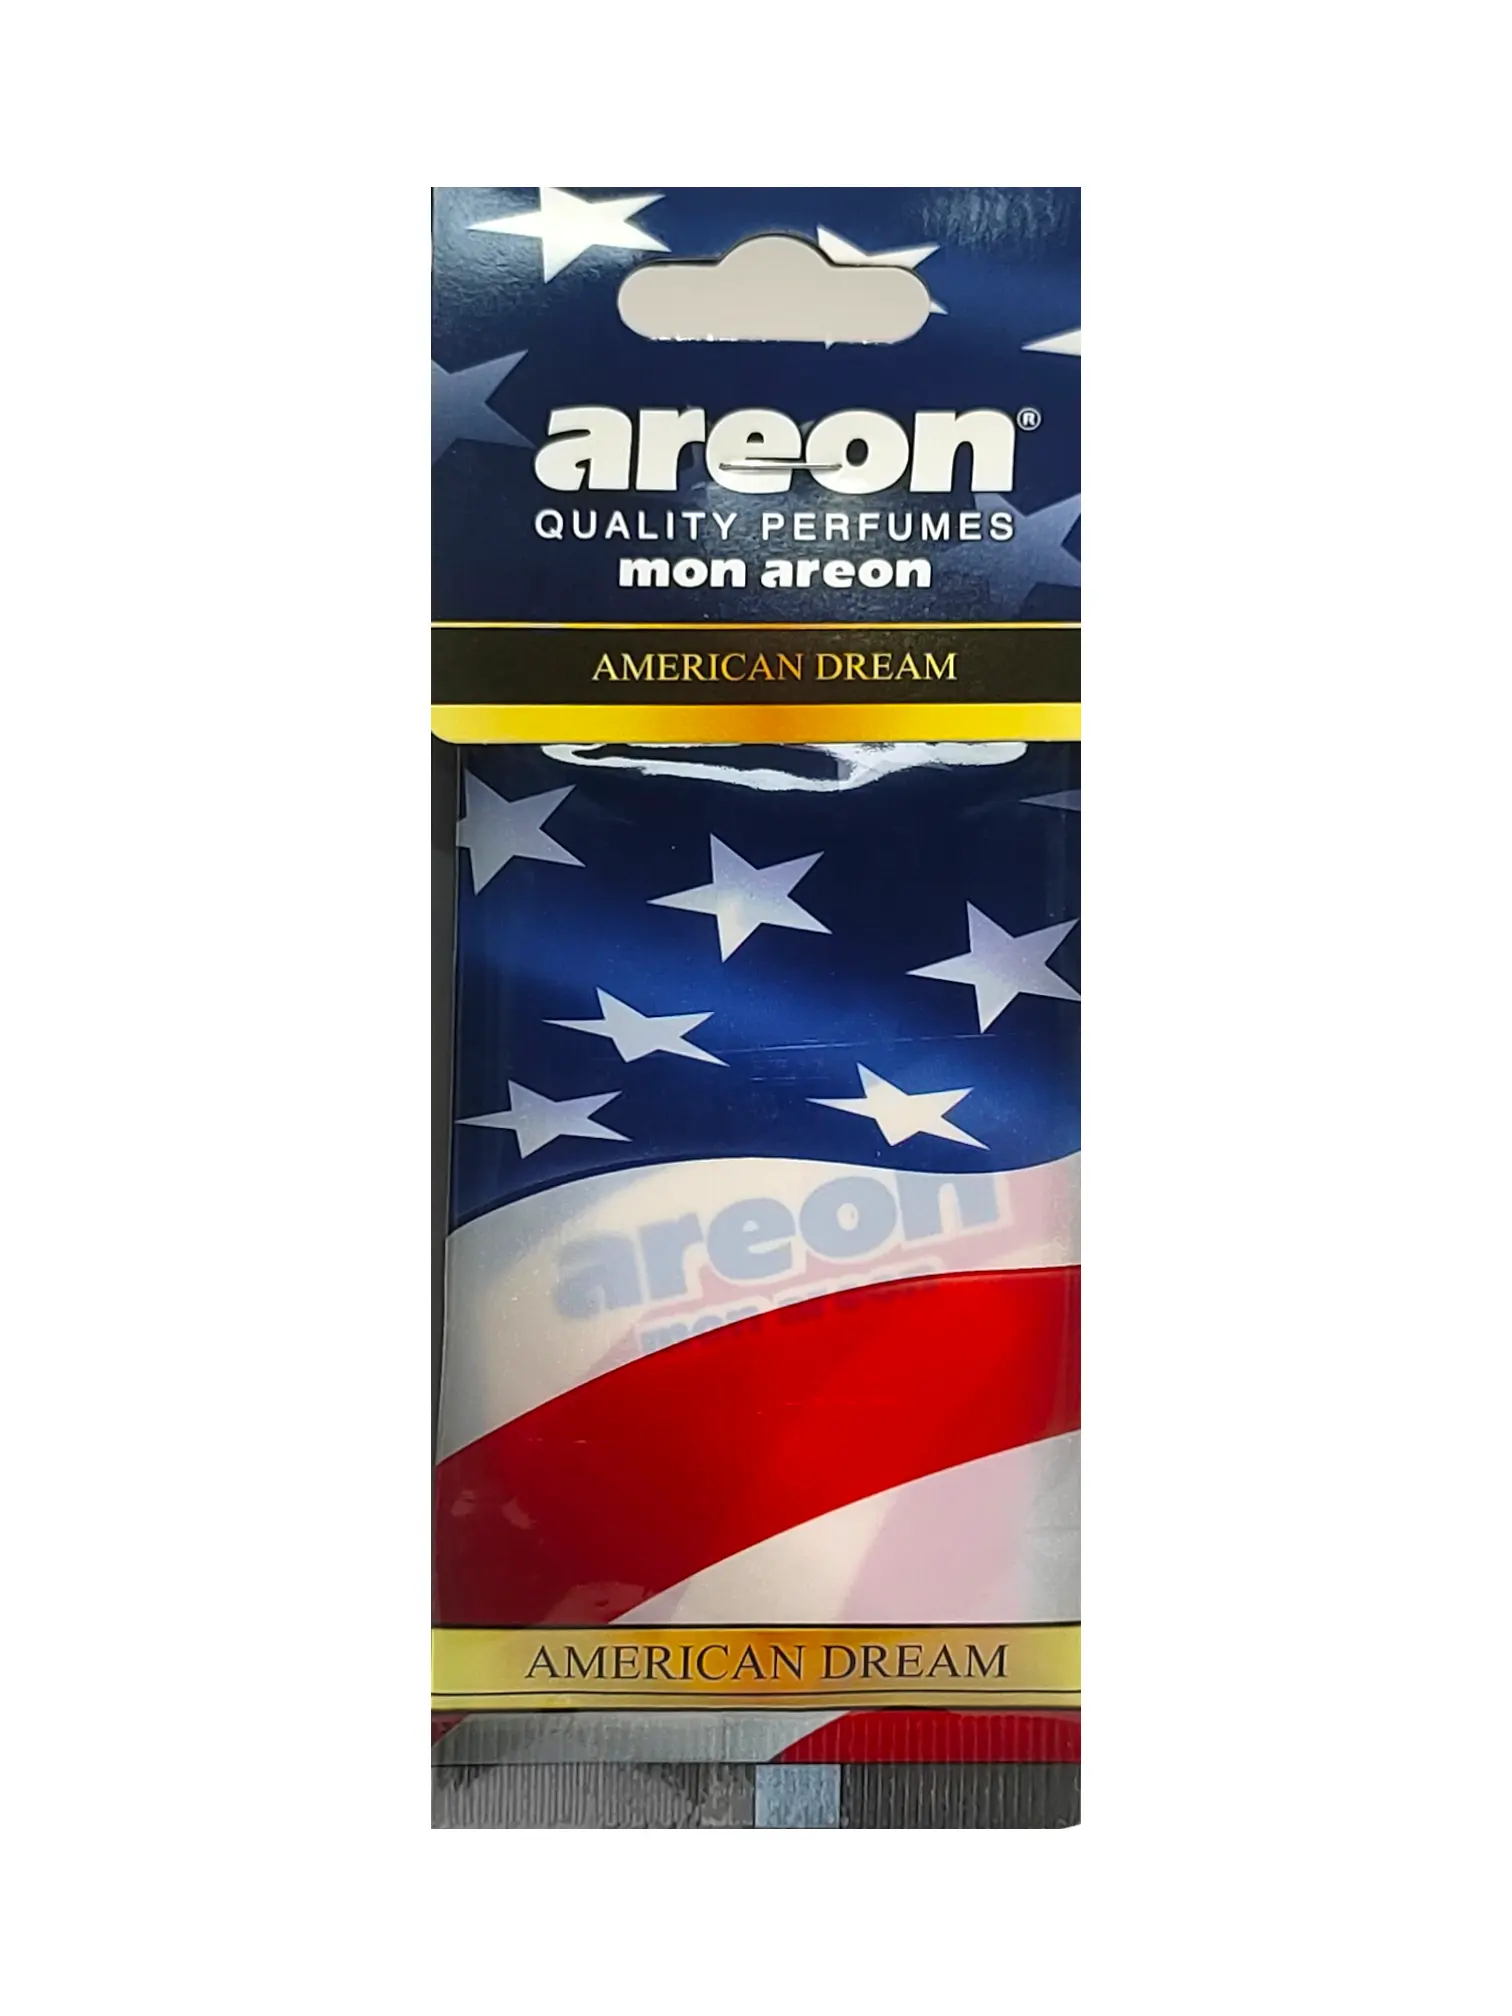 AREON Mon подвесная машина и освежитель воздуха для дома, американская мечта